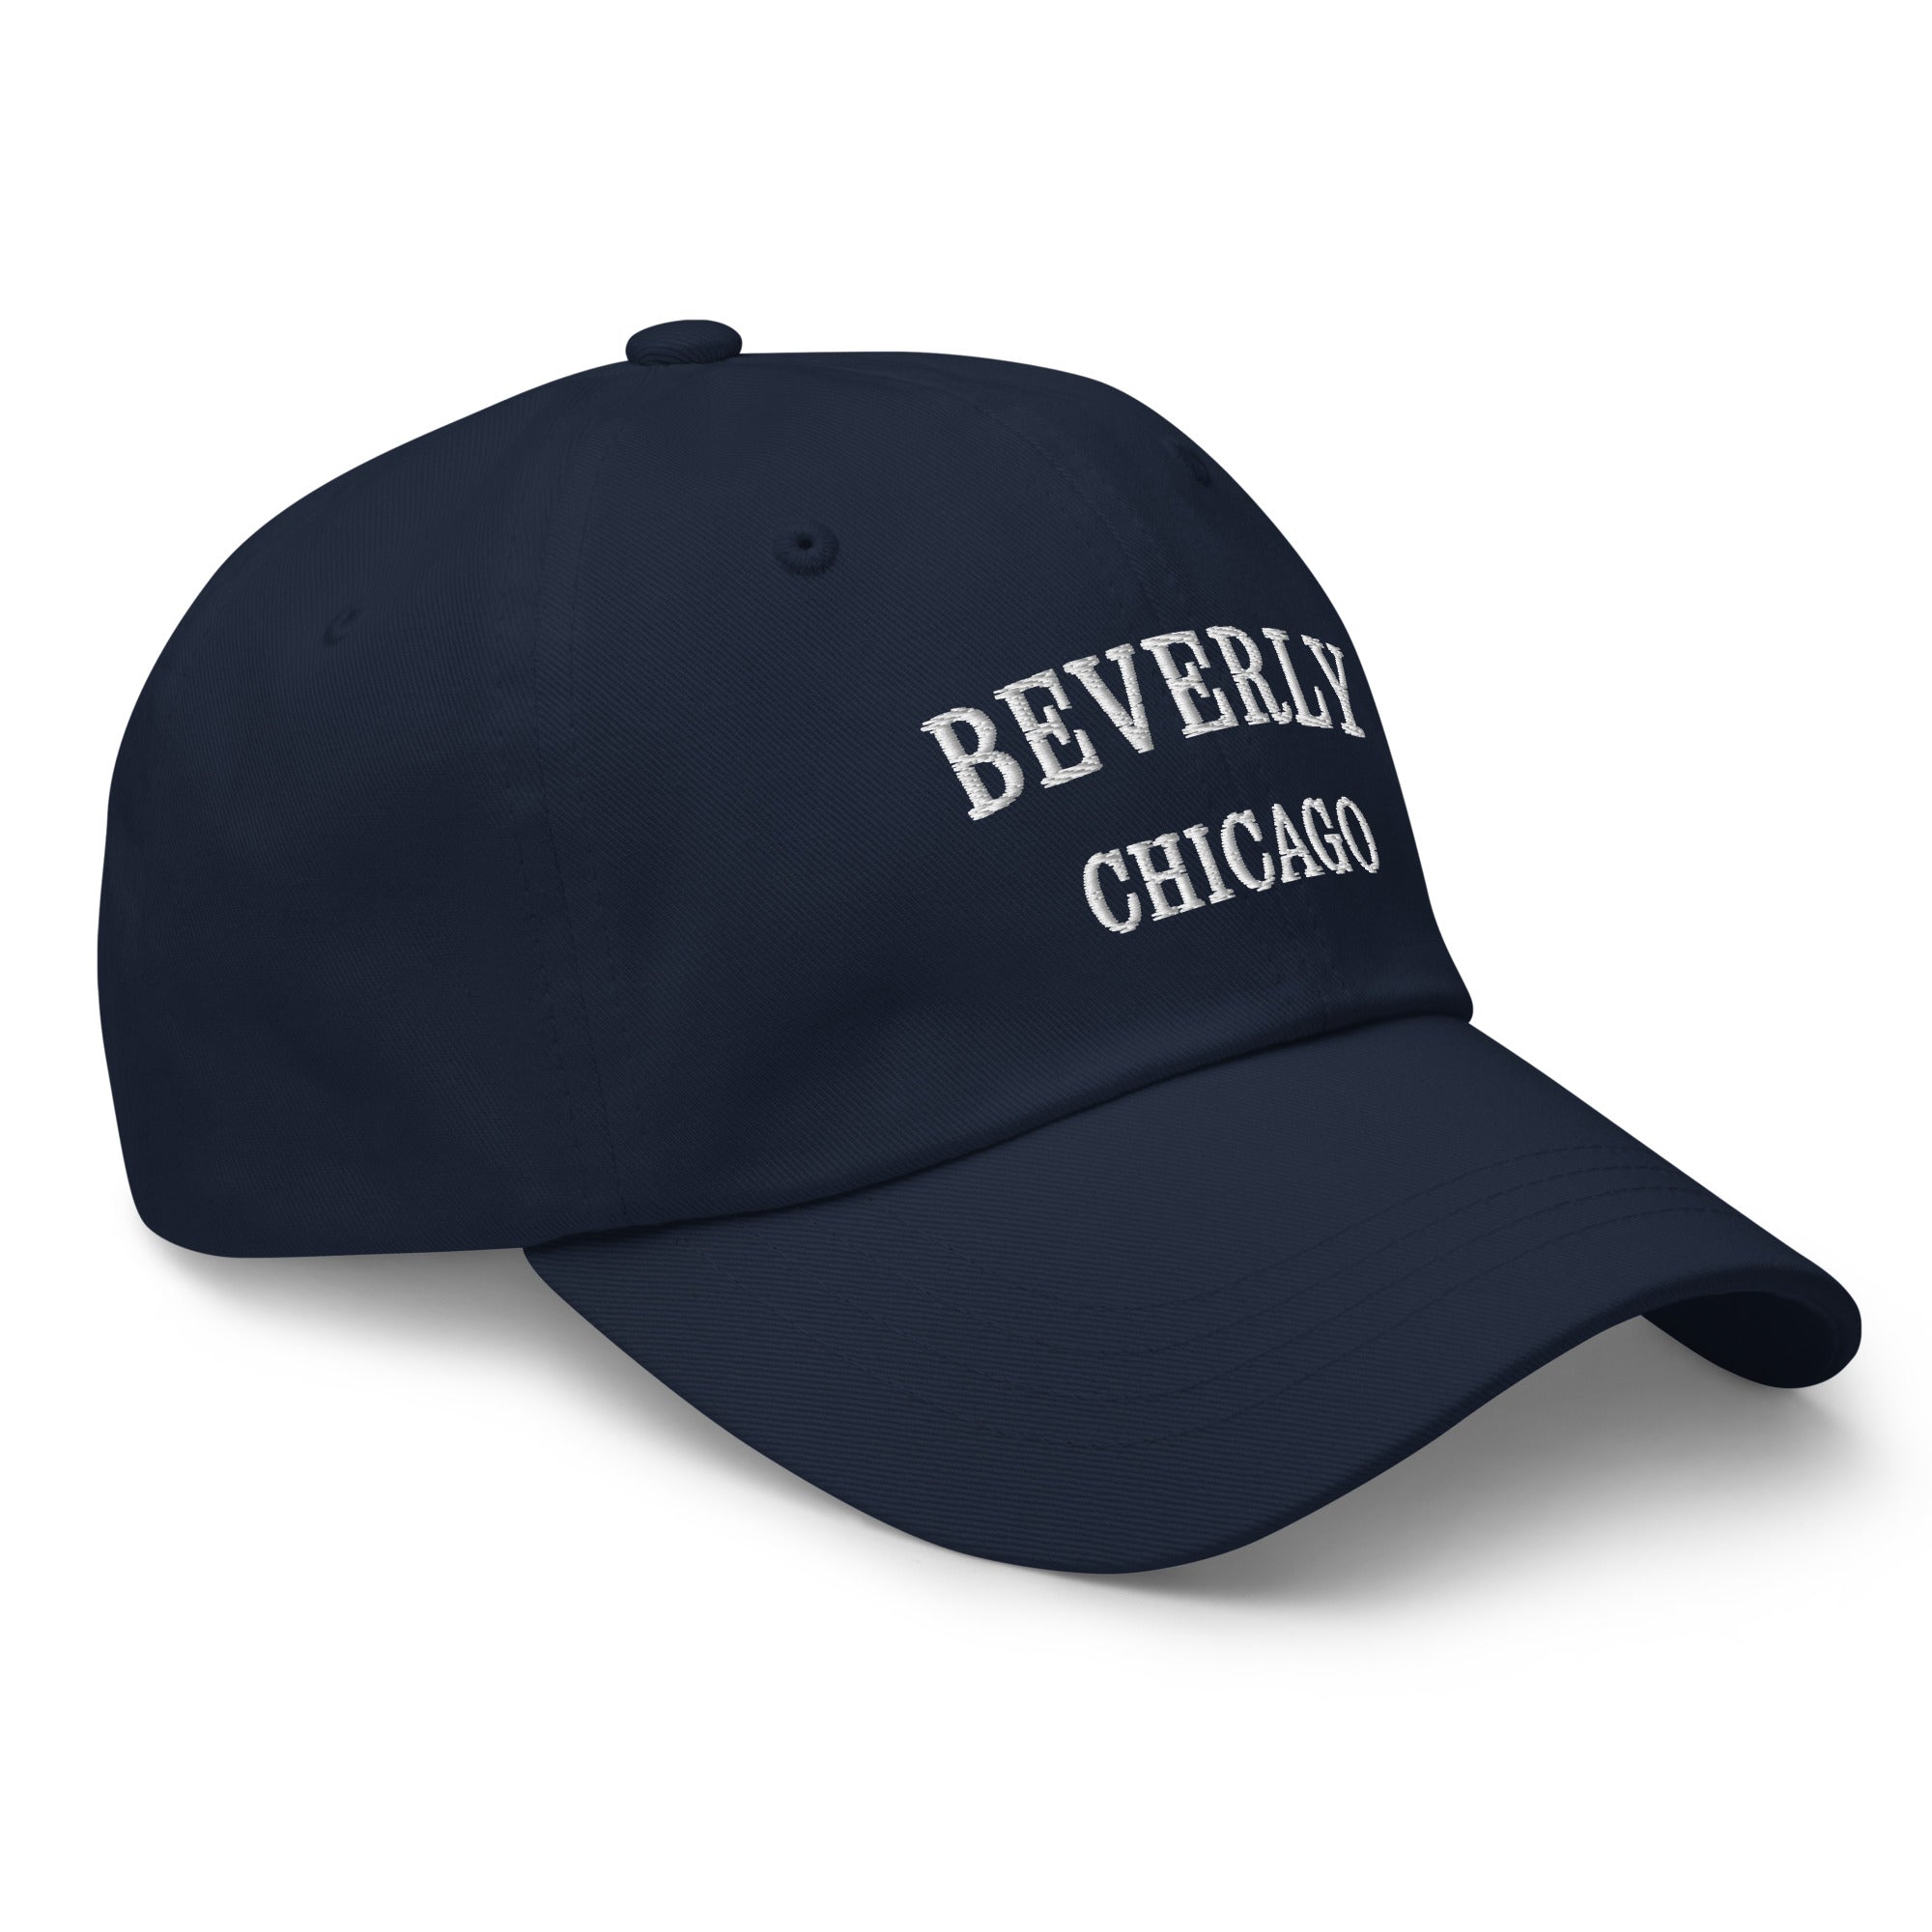 Beverly Chicago Dad Hat